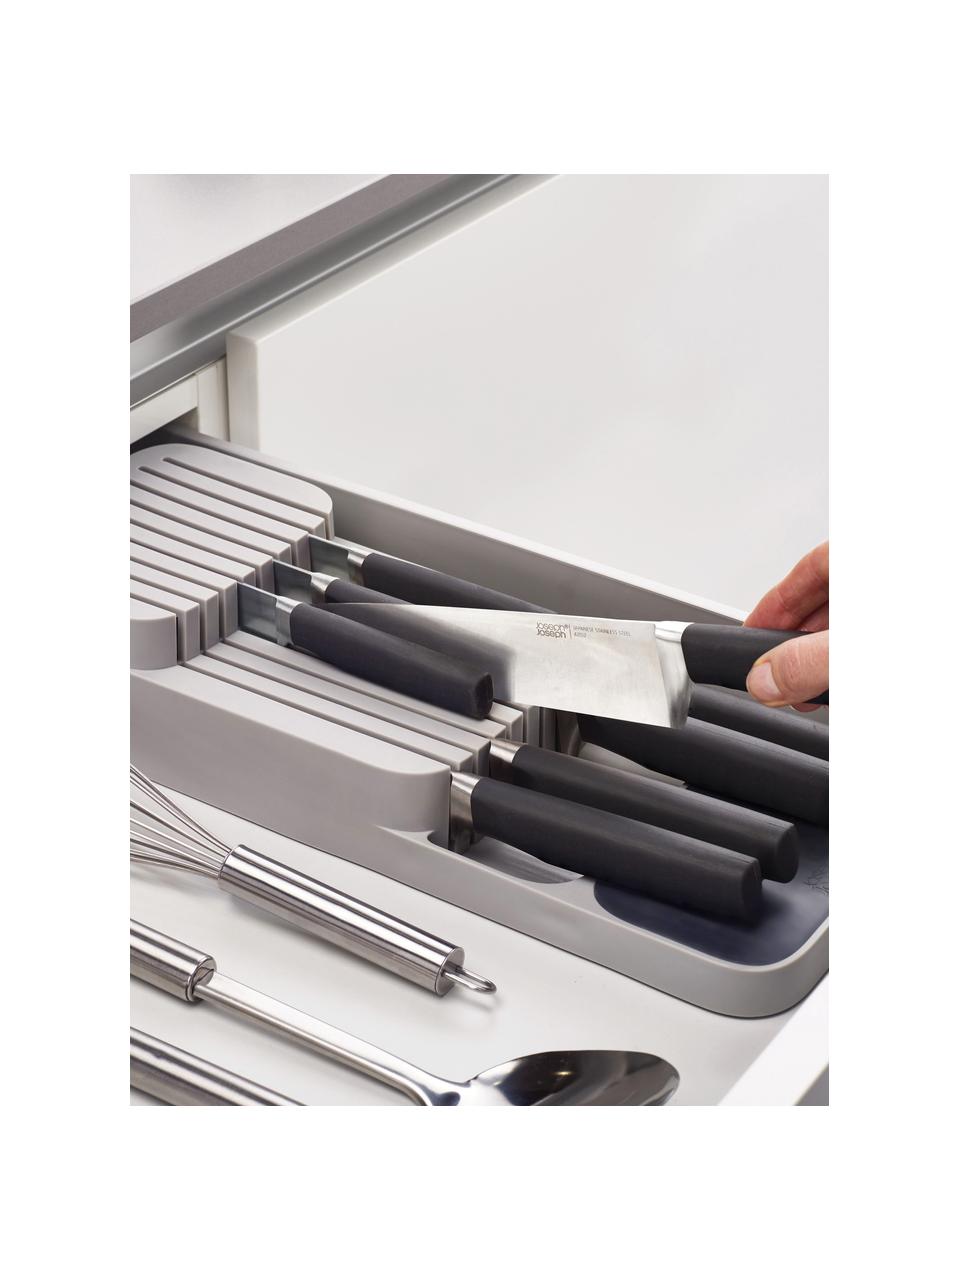 Messer-Organizer DrawerStore™ aus Kunststoff, Polypropylen, Grau, B 40 x H 8 cm